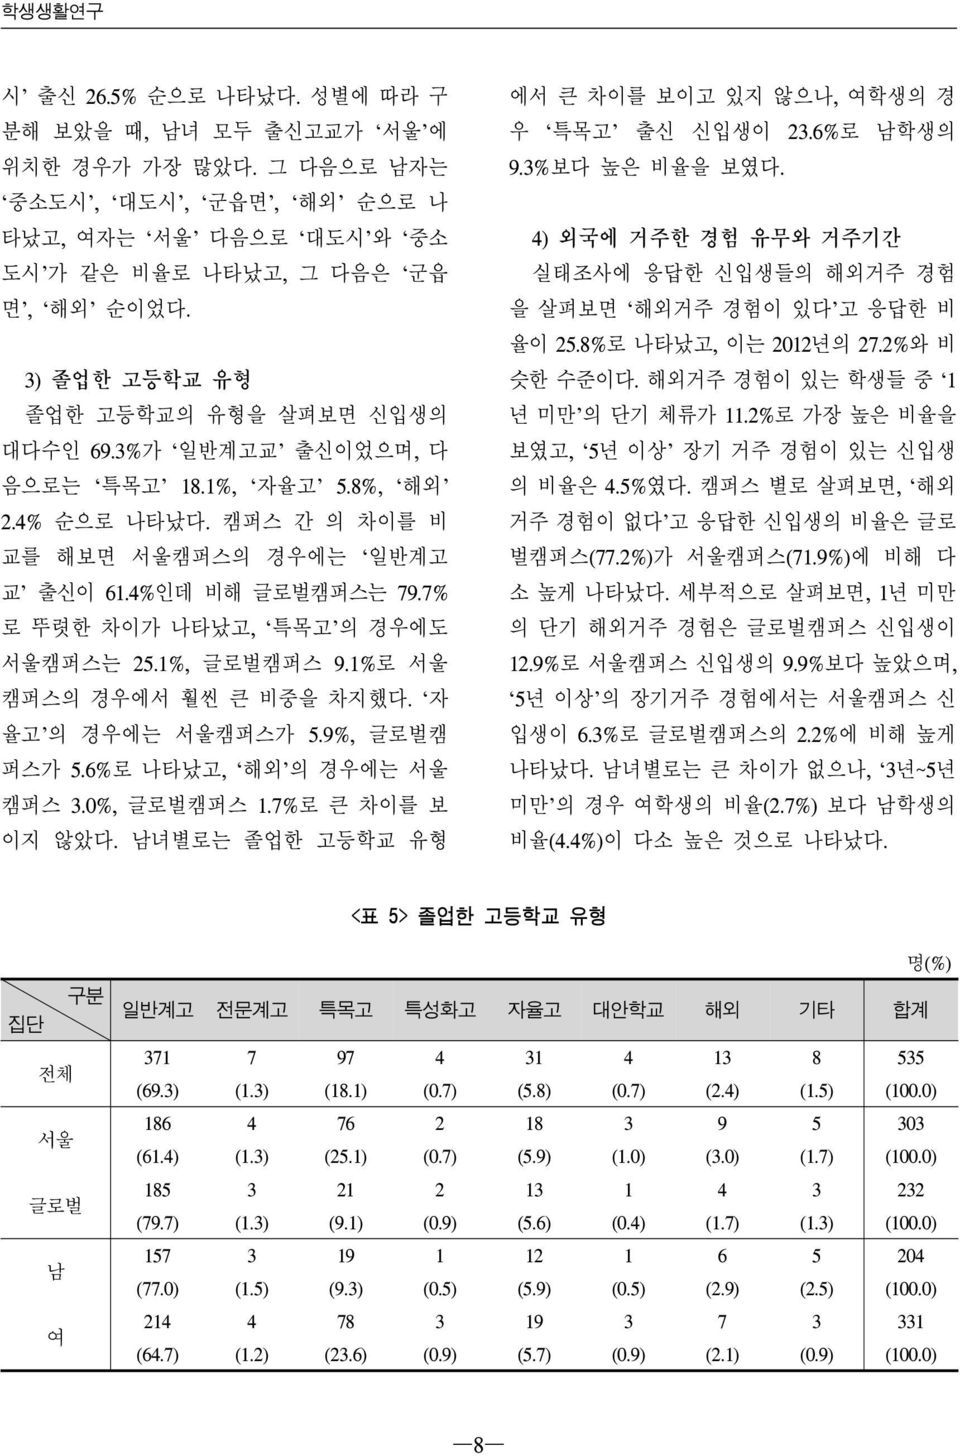 7% 로 뚜렷한 차이가 나타났고, 특목고 의 경우에도 서울캠퍼스는 25.1%, 글로벌캠퍼스 9.1%로 서울 캠퍼스의 경우에서 훨씬 큰 비중을 차지했다. 자 율고 의 경우에는 서울캠퍼스가 5.9%, 글로벌캠 퍼스가 5.6%로 나타났고, 해외 의 경우에는 서울 캠퍼스 3.0%, 글로벌캠퍼스 1.7%로 큰 차이를 보 이지 않았다.